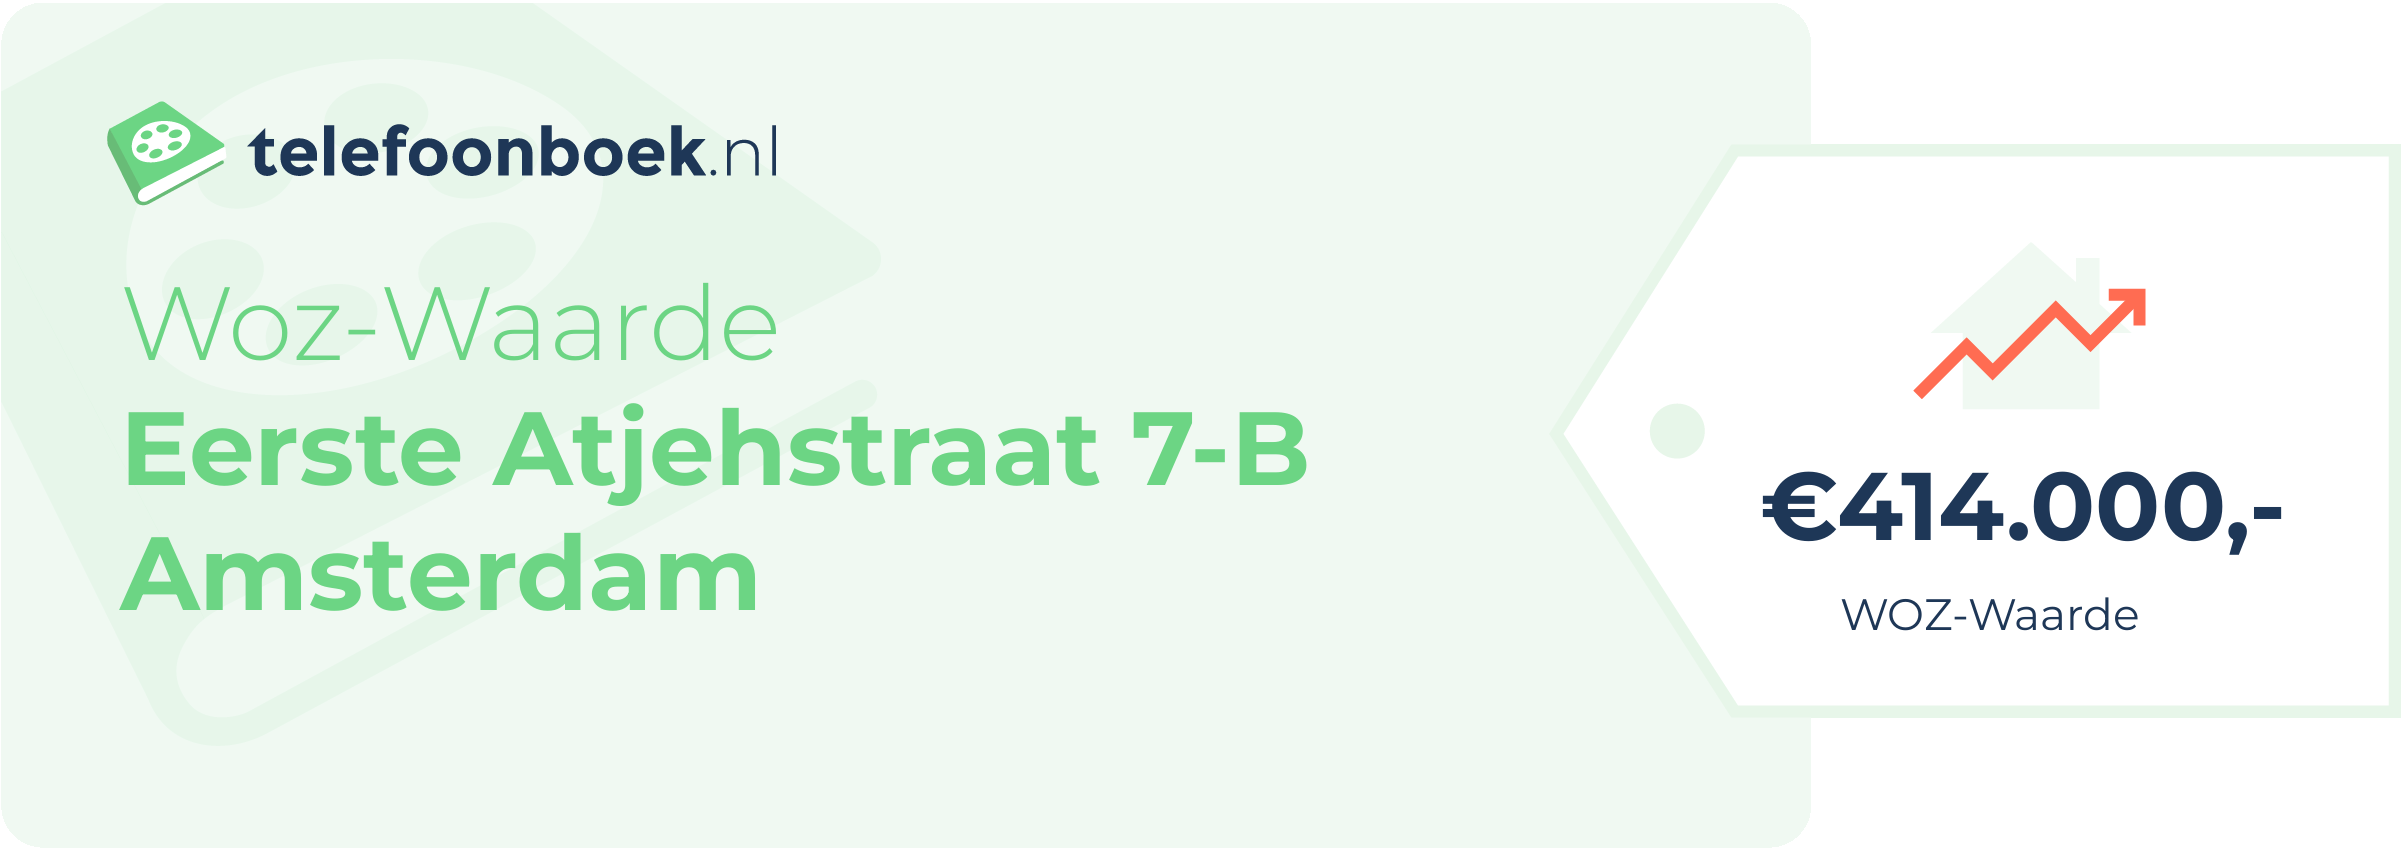 WOZ-waarde Eerste Atjehstraat 7-B Amsterdam